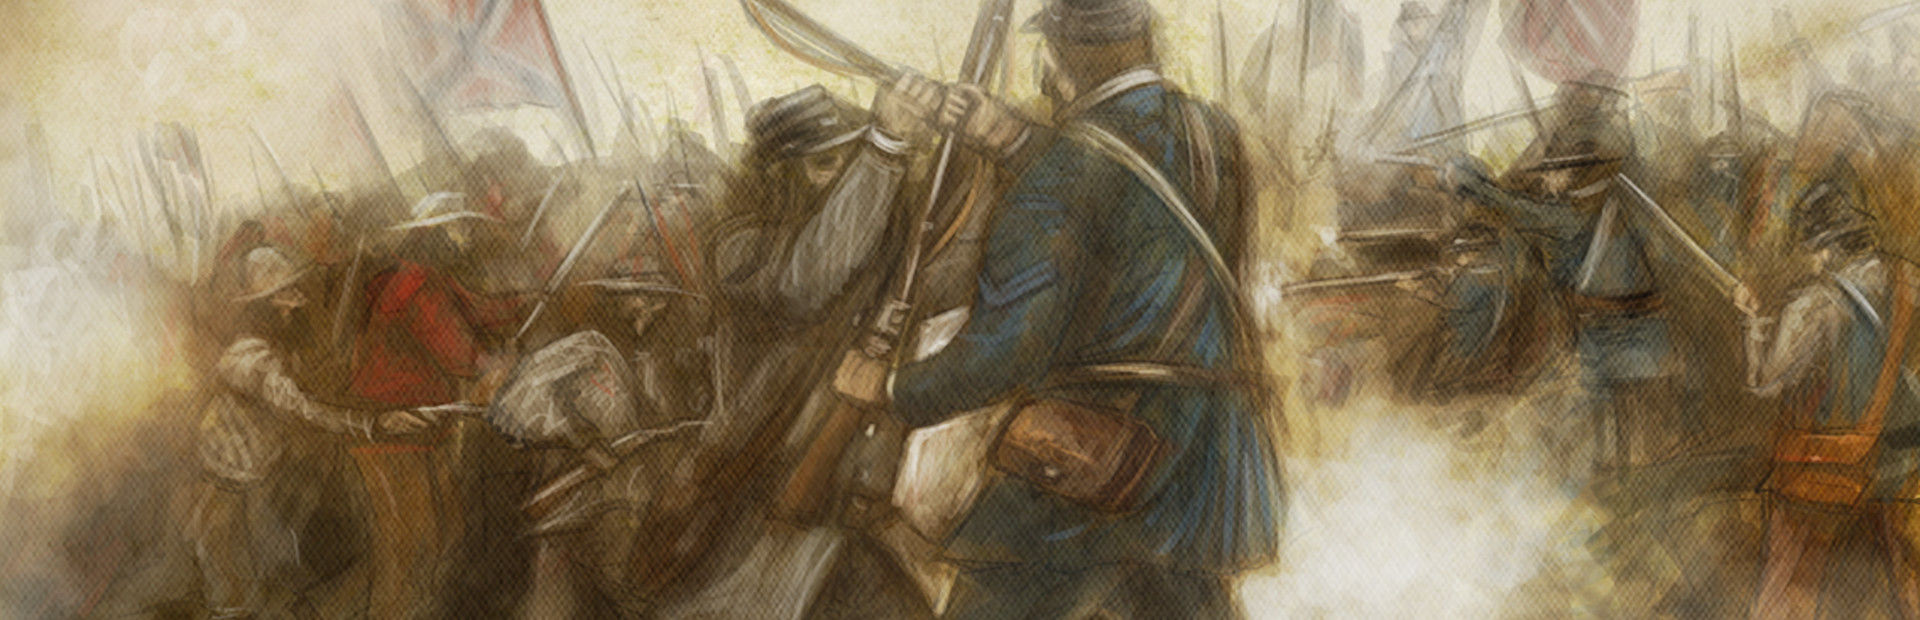 Civil War: Bull Run 1861 cover image